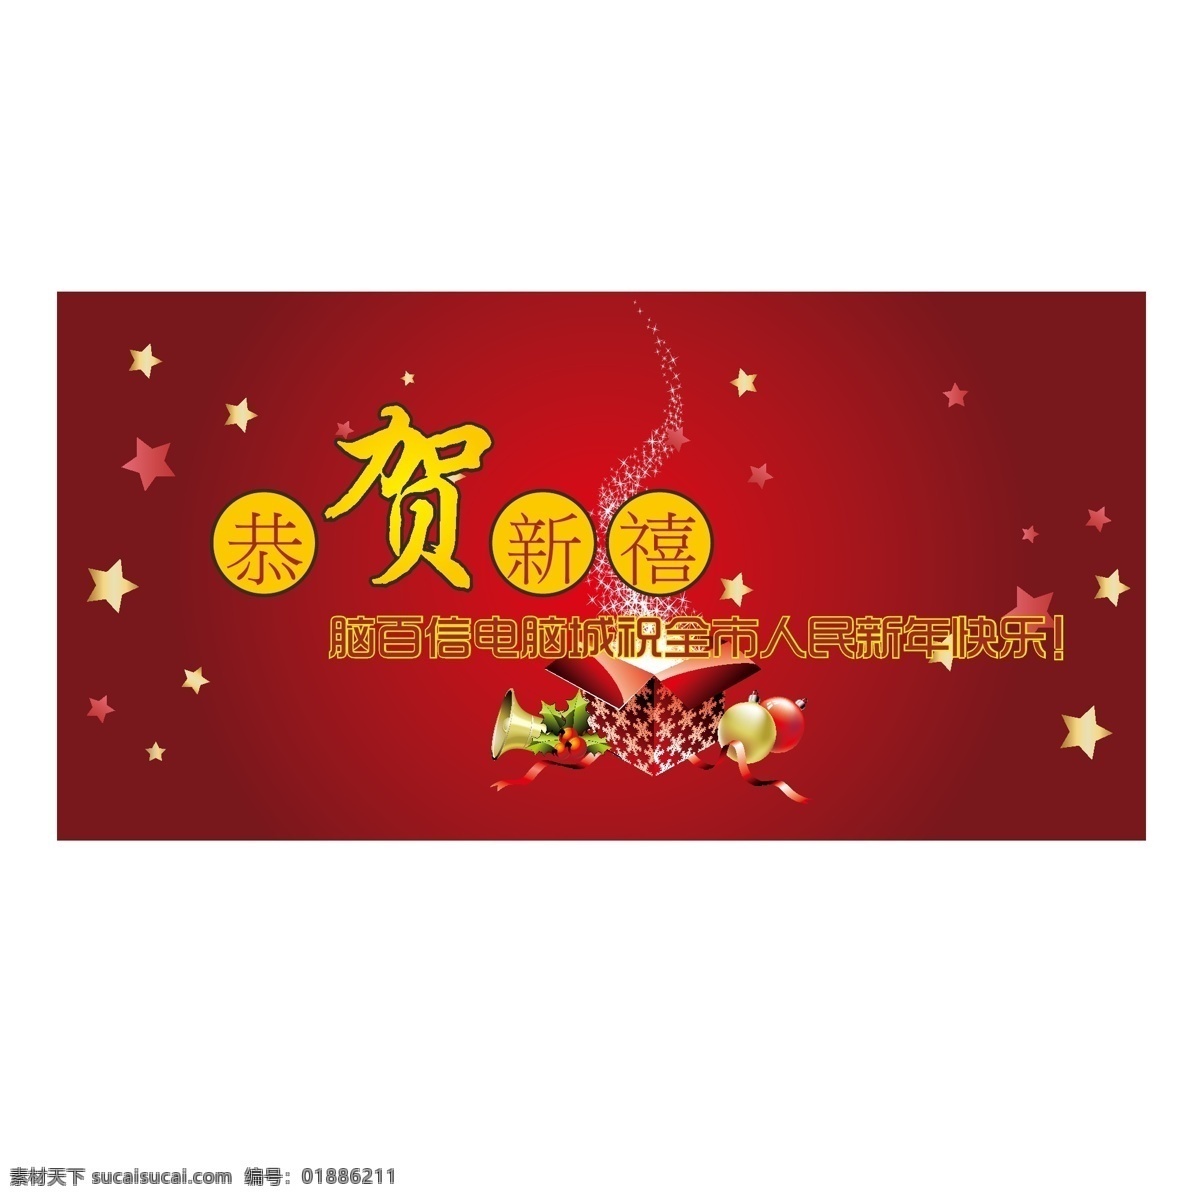 恭贺新禧 2013 暗红 背景 春节 促销 礼物 喷绘 新年 墙贴 蛇年 春节主题 矢量 矢量图